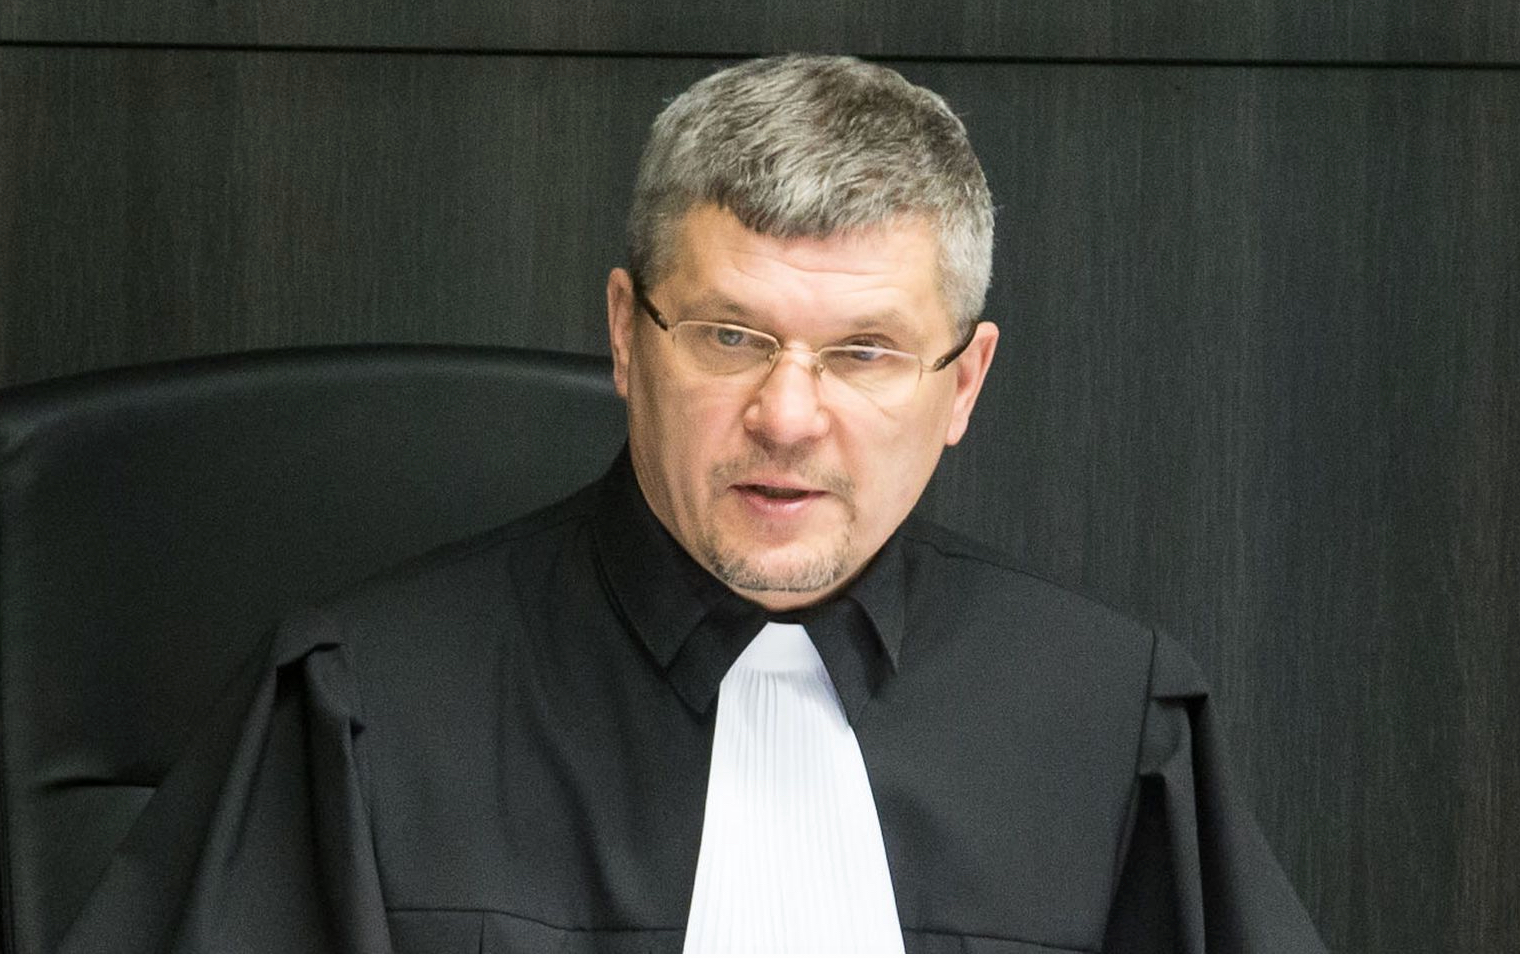 Korrumpeerunud avalik teenistuja Olev Mihkelson tuleb tagandada ametist, eirab süütuse presumptsiooni ja põhiseadust